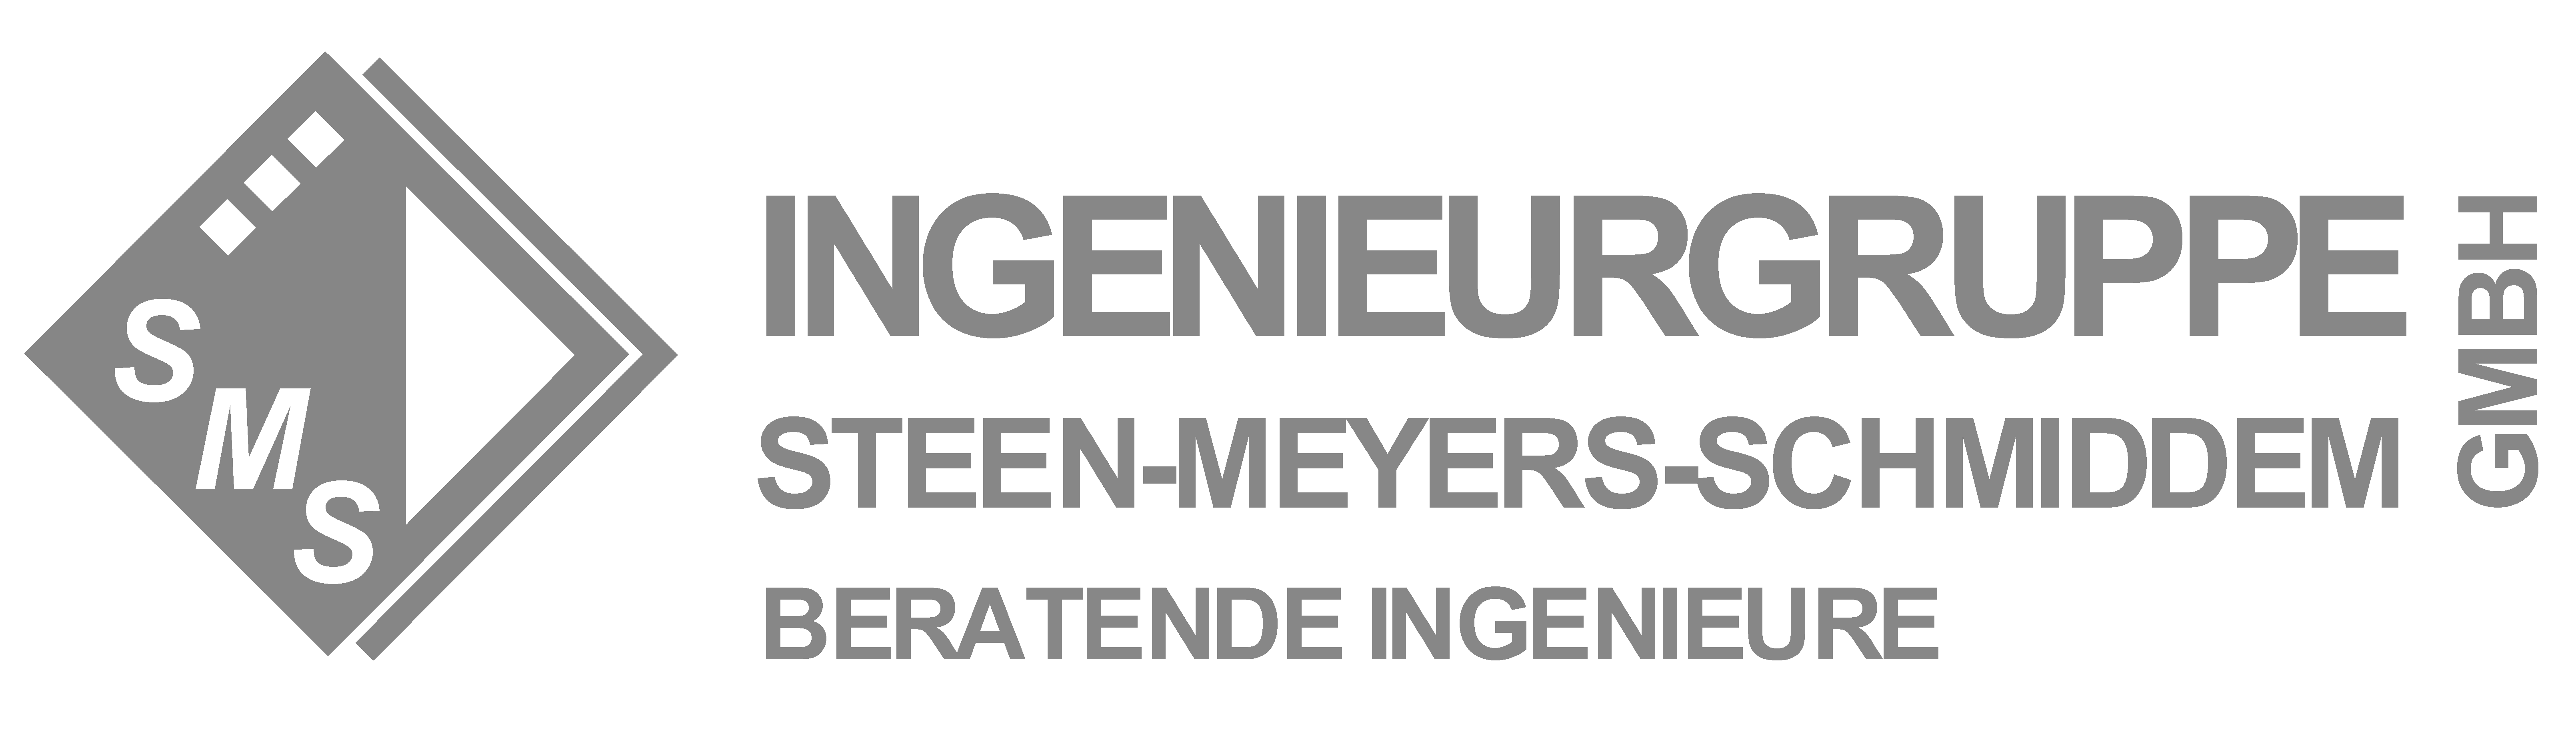 Ingenieurgruppe Steen-Meyers-Schmiddem GmbH